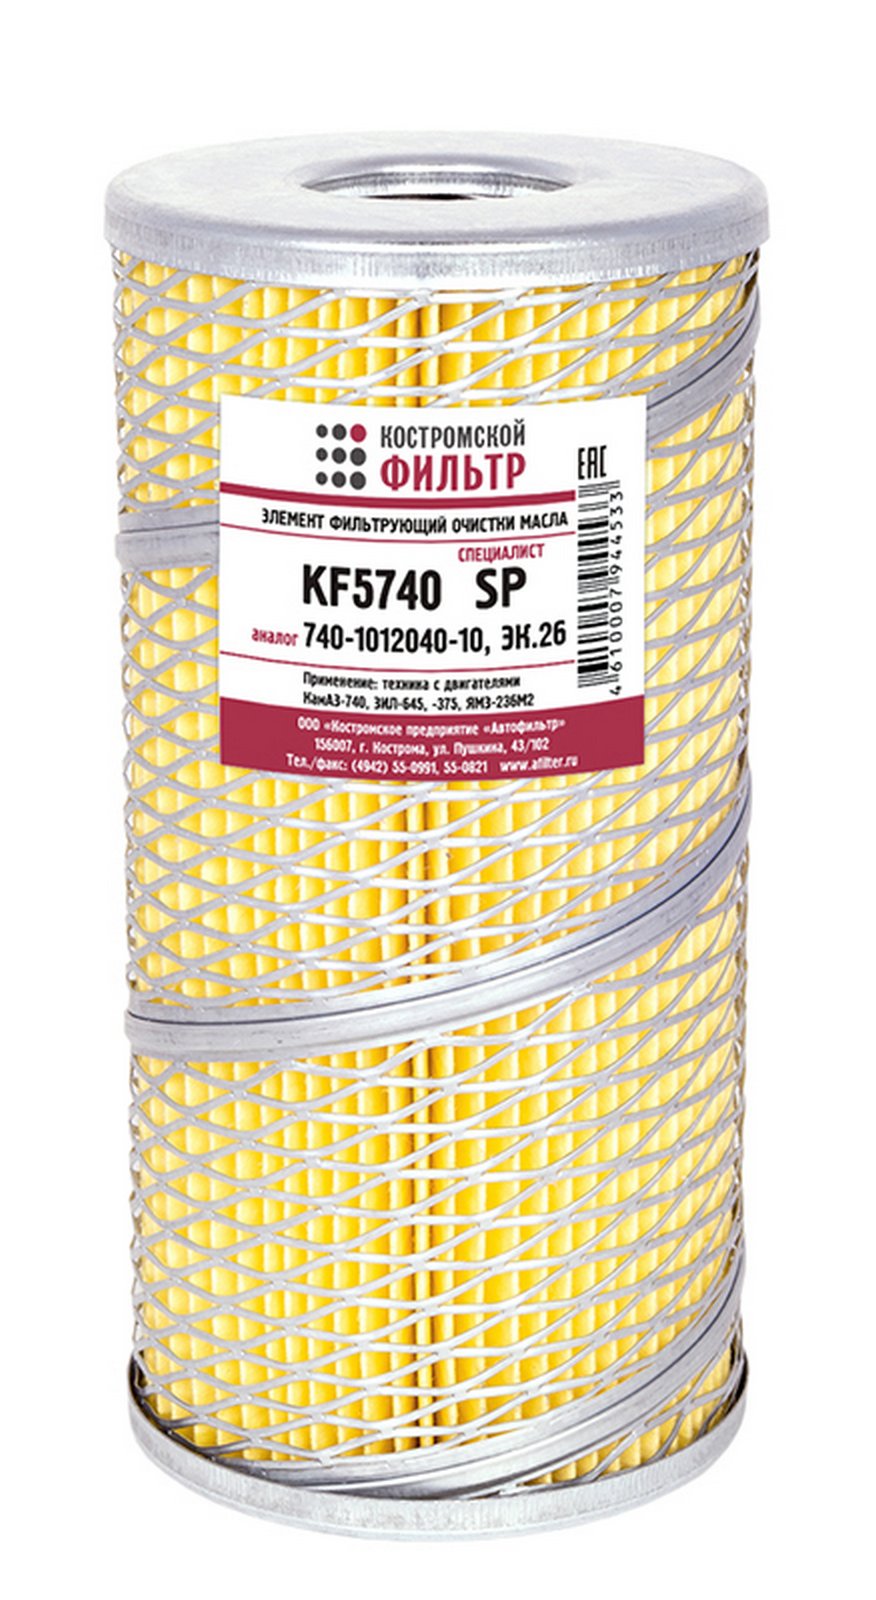 KF5740 SP Элемент фильтрующий очистки масла KF5740 SP (740-1012040-10, ЭК.26) Специалист  Костромской фильтр